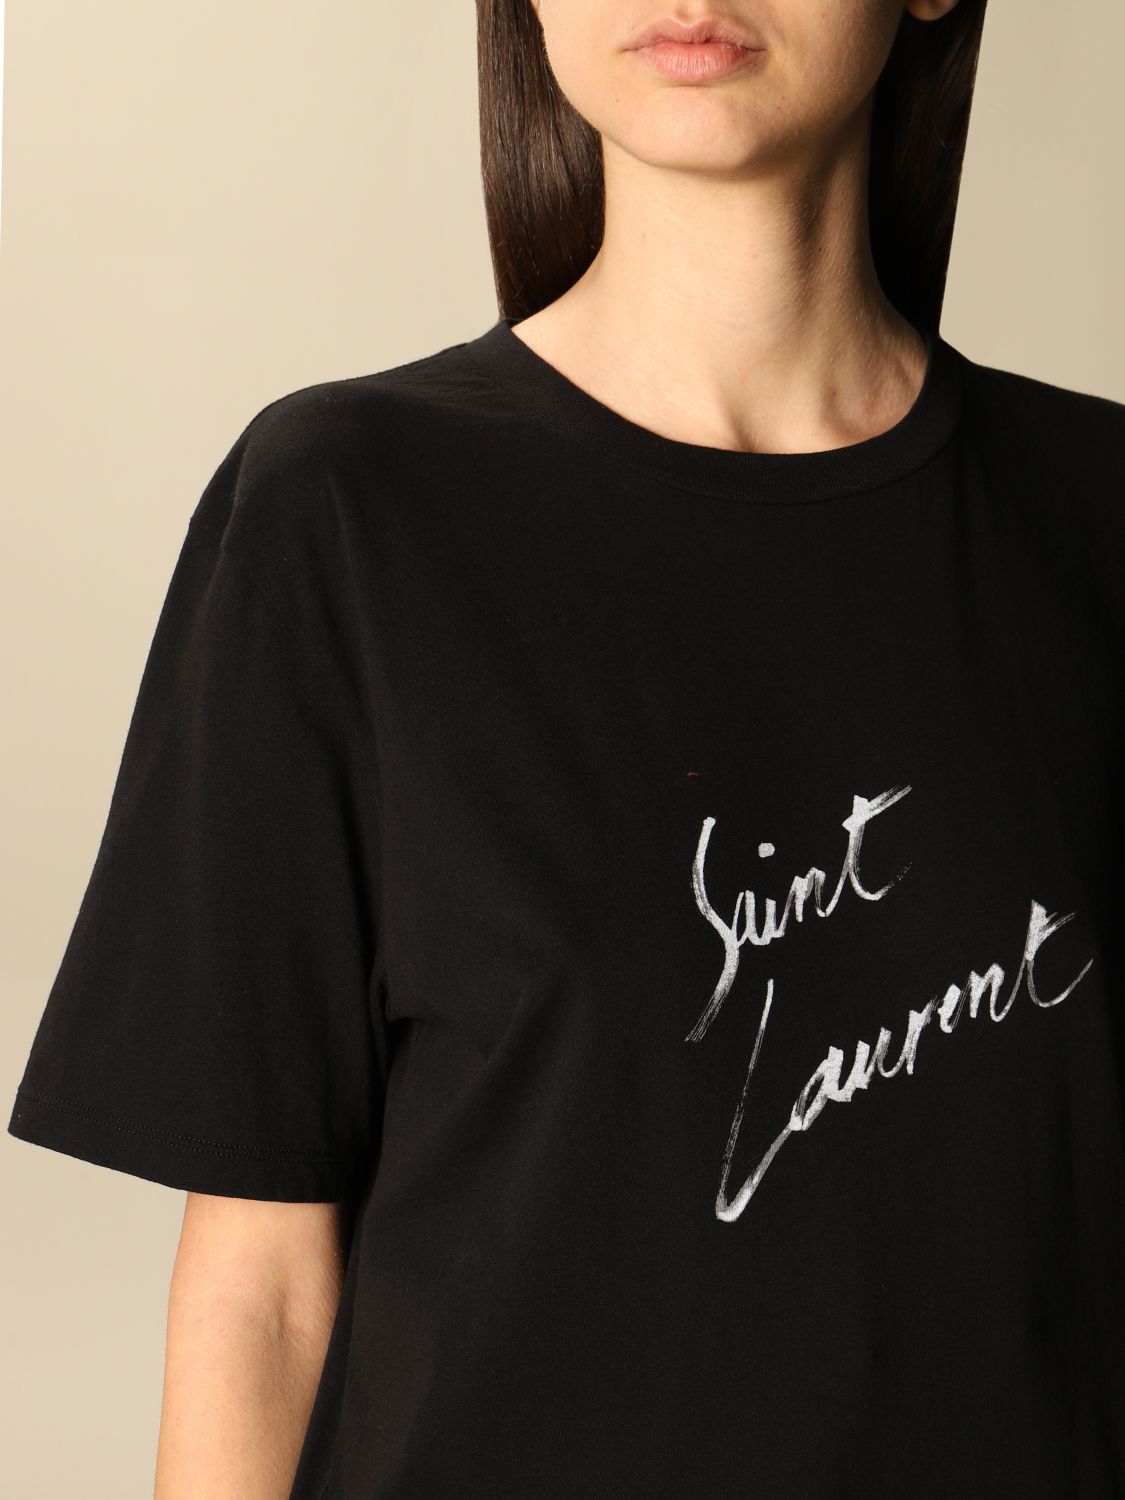 市販 Saint Laurent サンローラン シグネチャー Tシャツ